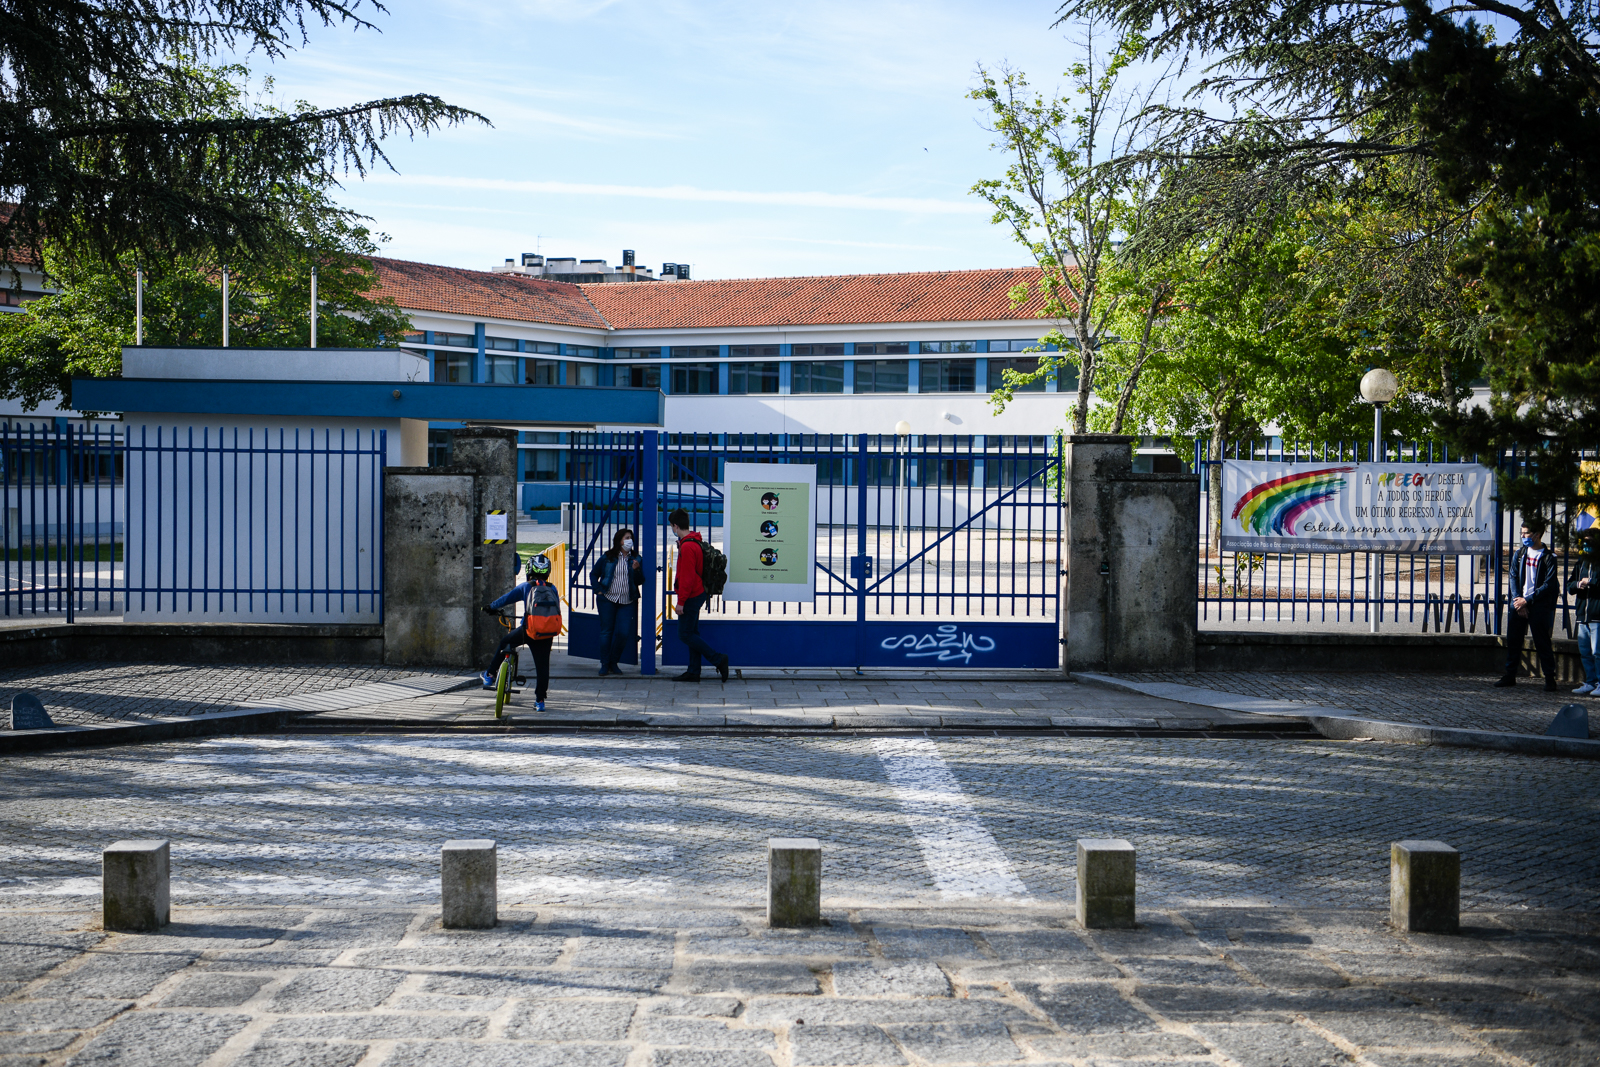 Greve nas escolas. Função publica em greve fecha a escola grão vasco